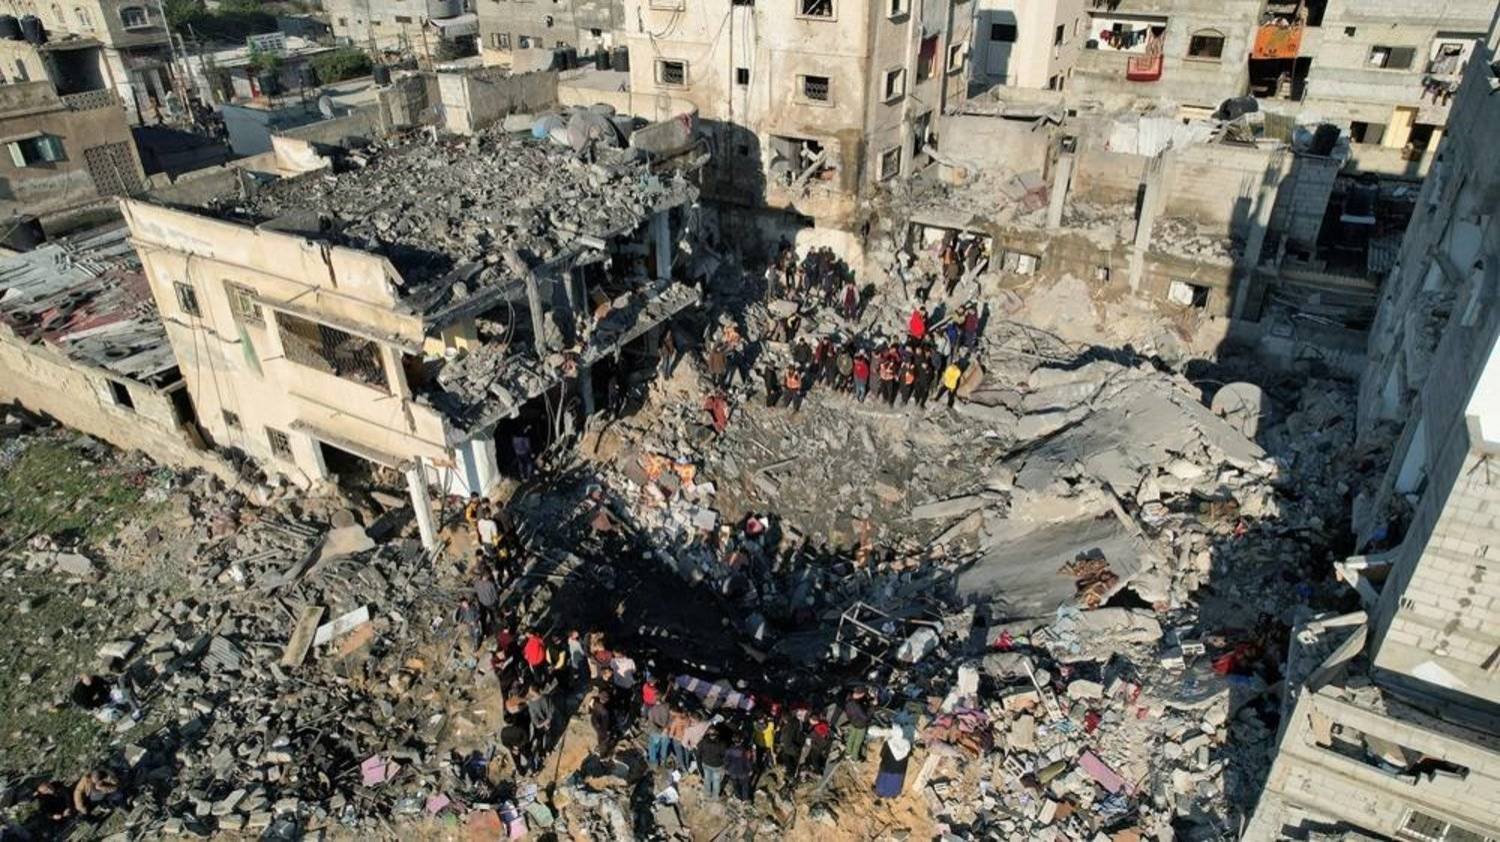 Hamas says Israeli massacres aim to force Palestinians out of Gaza